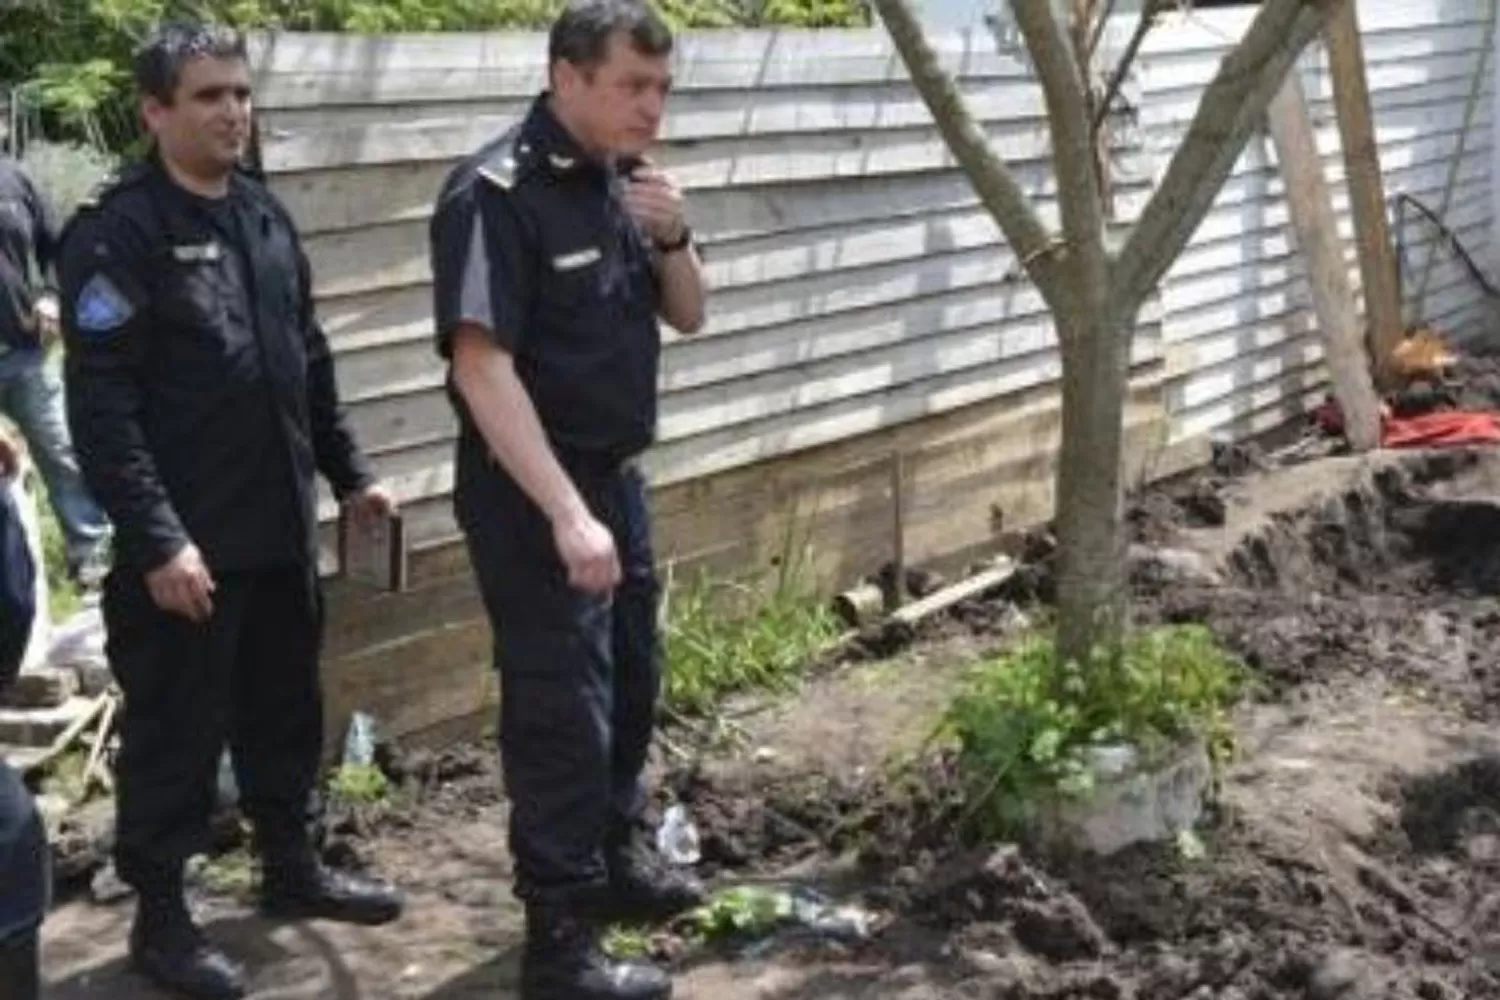 TIERRA REMOVIDA. La policía logró encontrar el cadáver en la tierra.